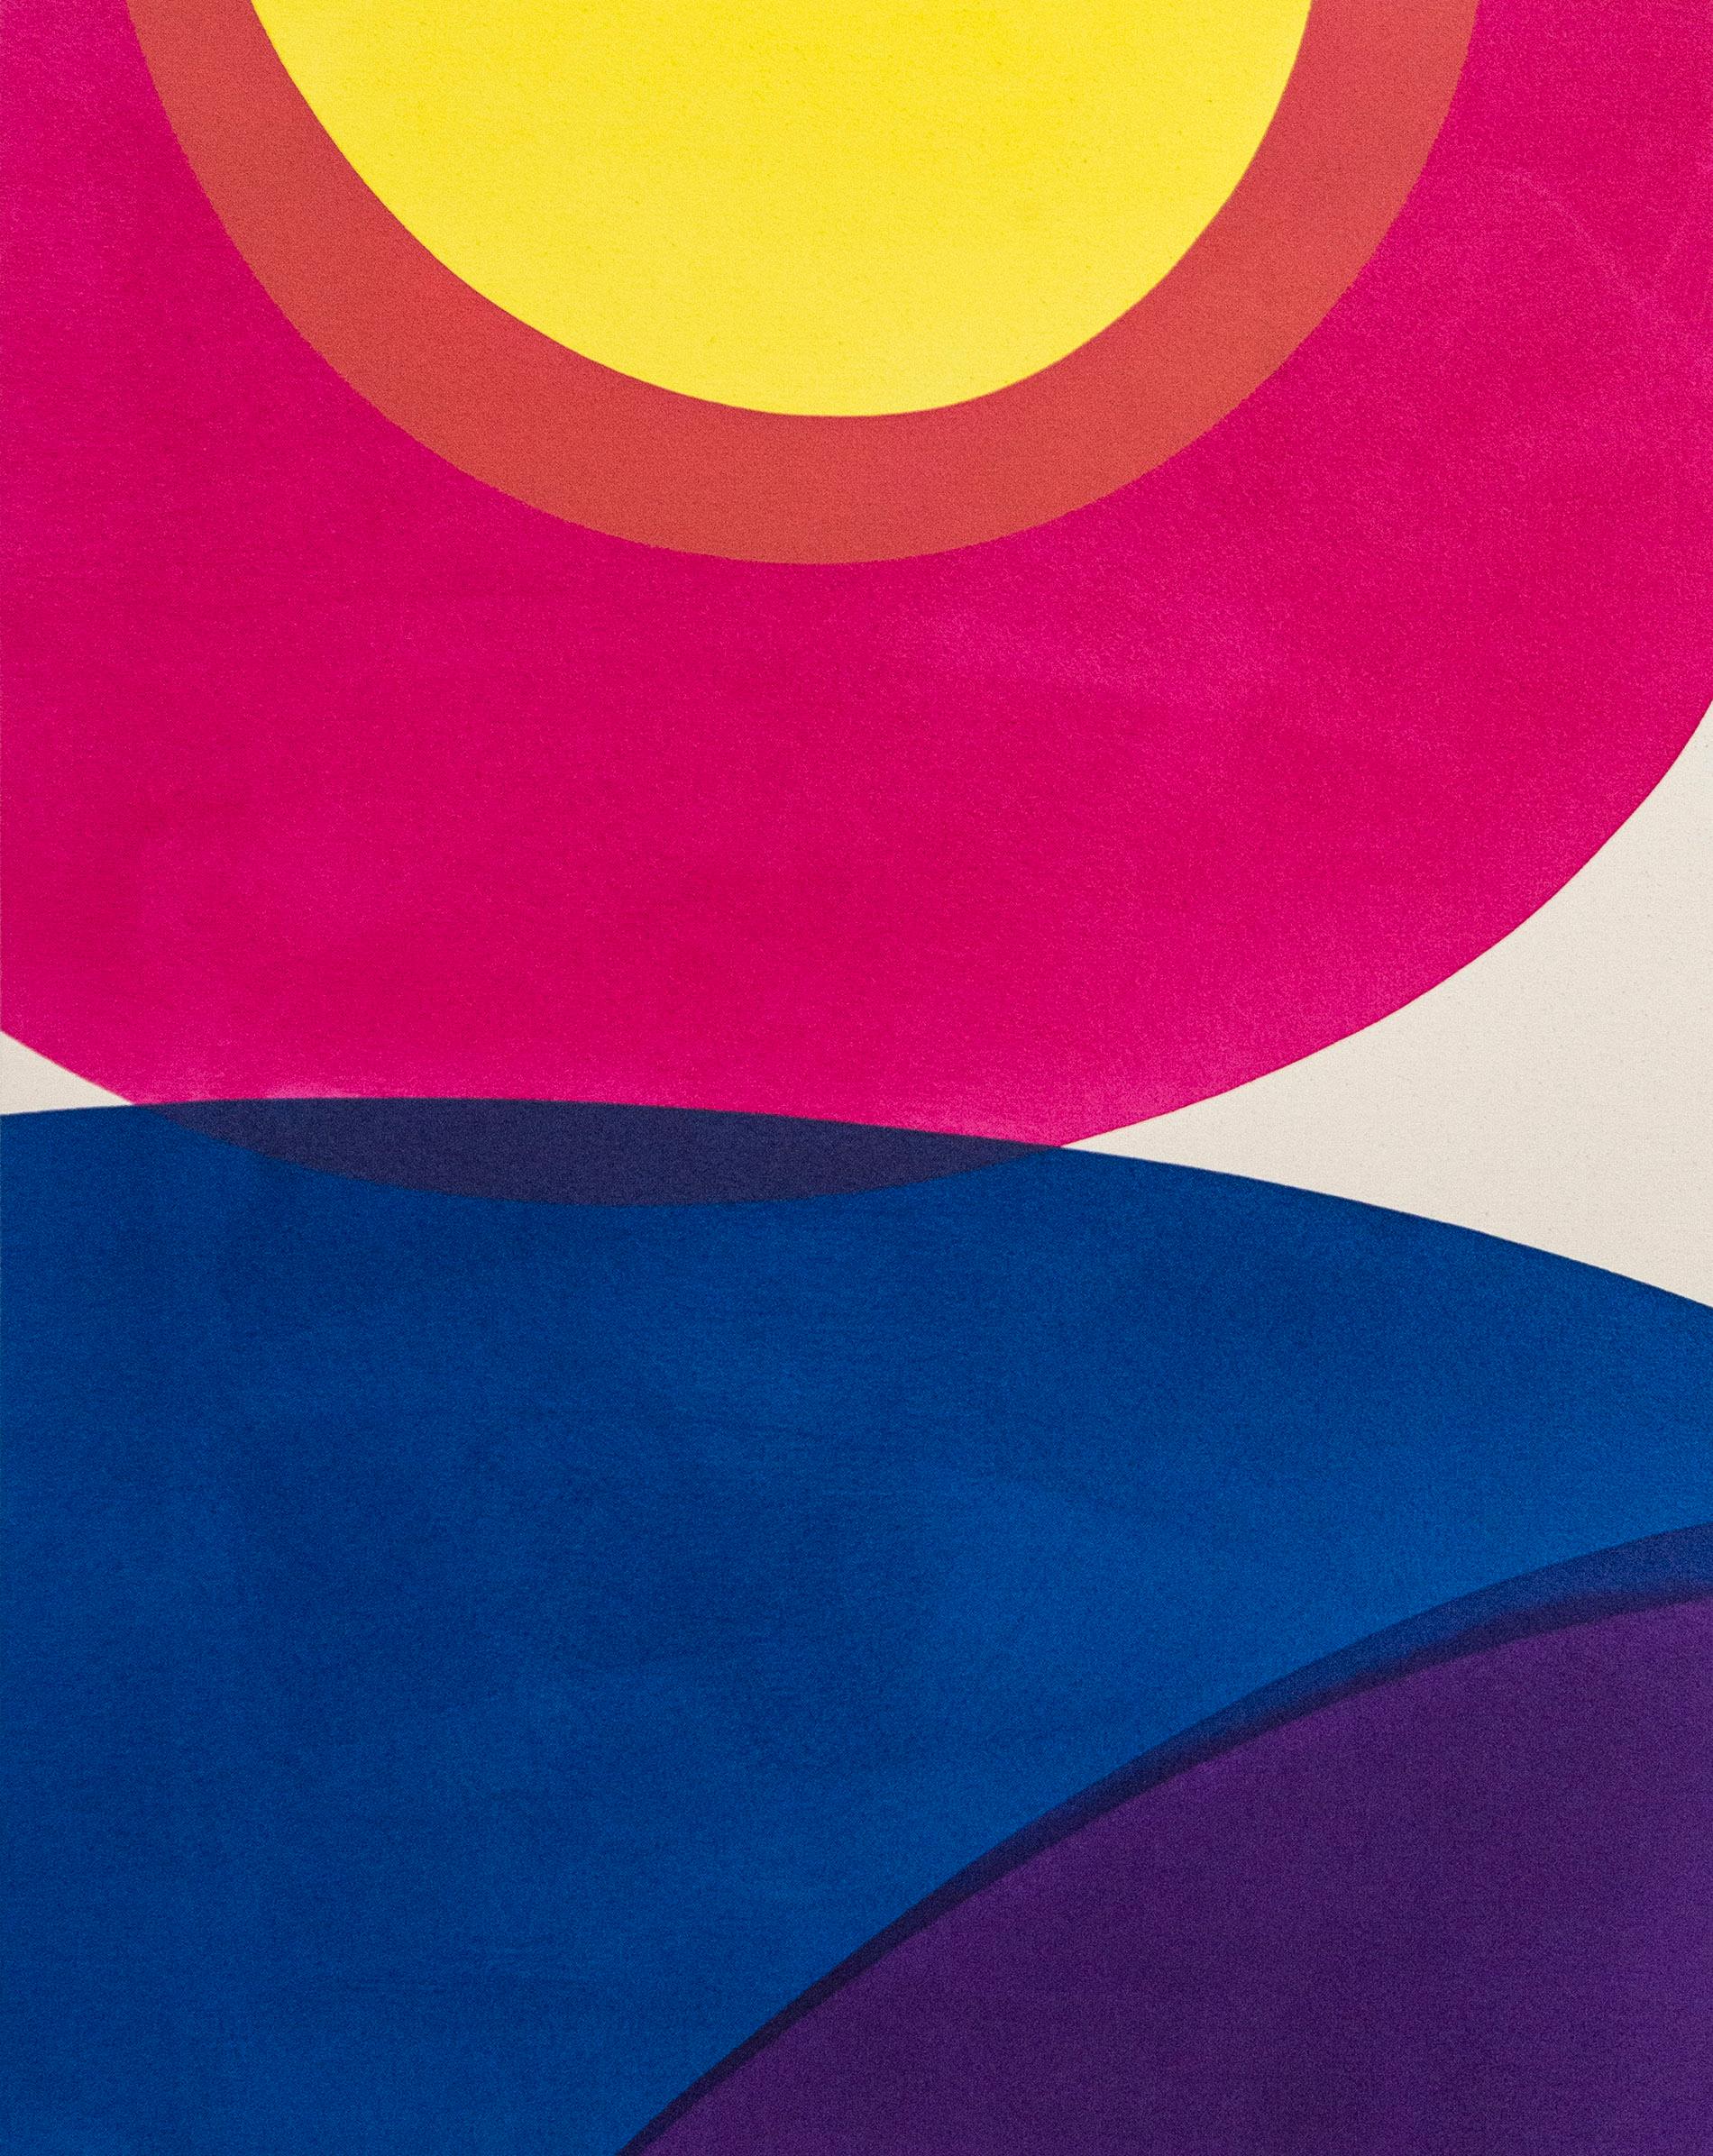 Ein kurzer Aufenthalt Nr. 4 – leuchtende Farben, abstrakt, minimalistisch, Acryl auf Leinwand – Painting von Aron Hill